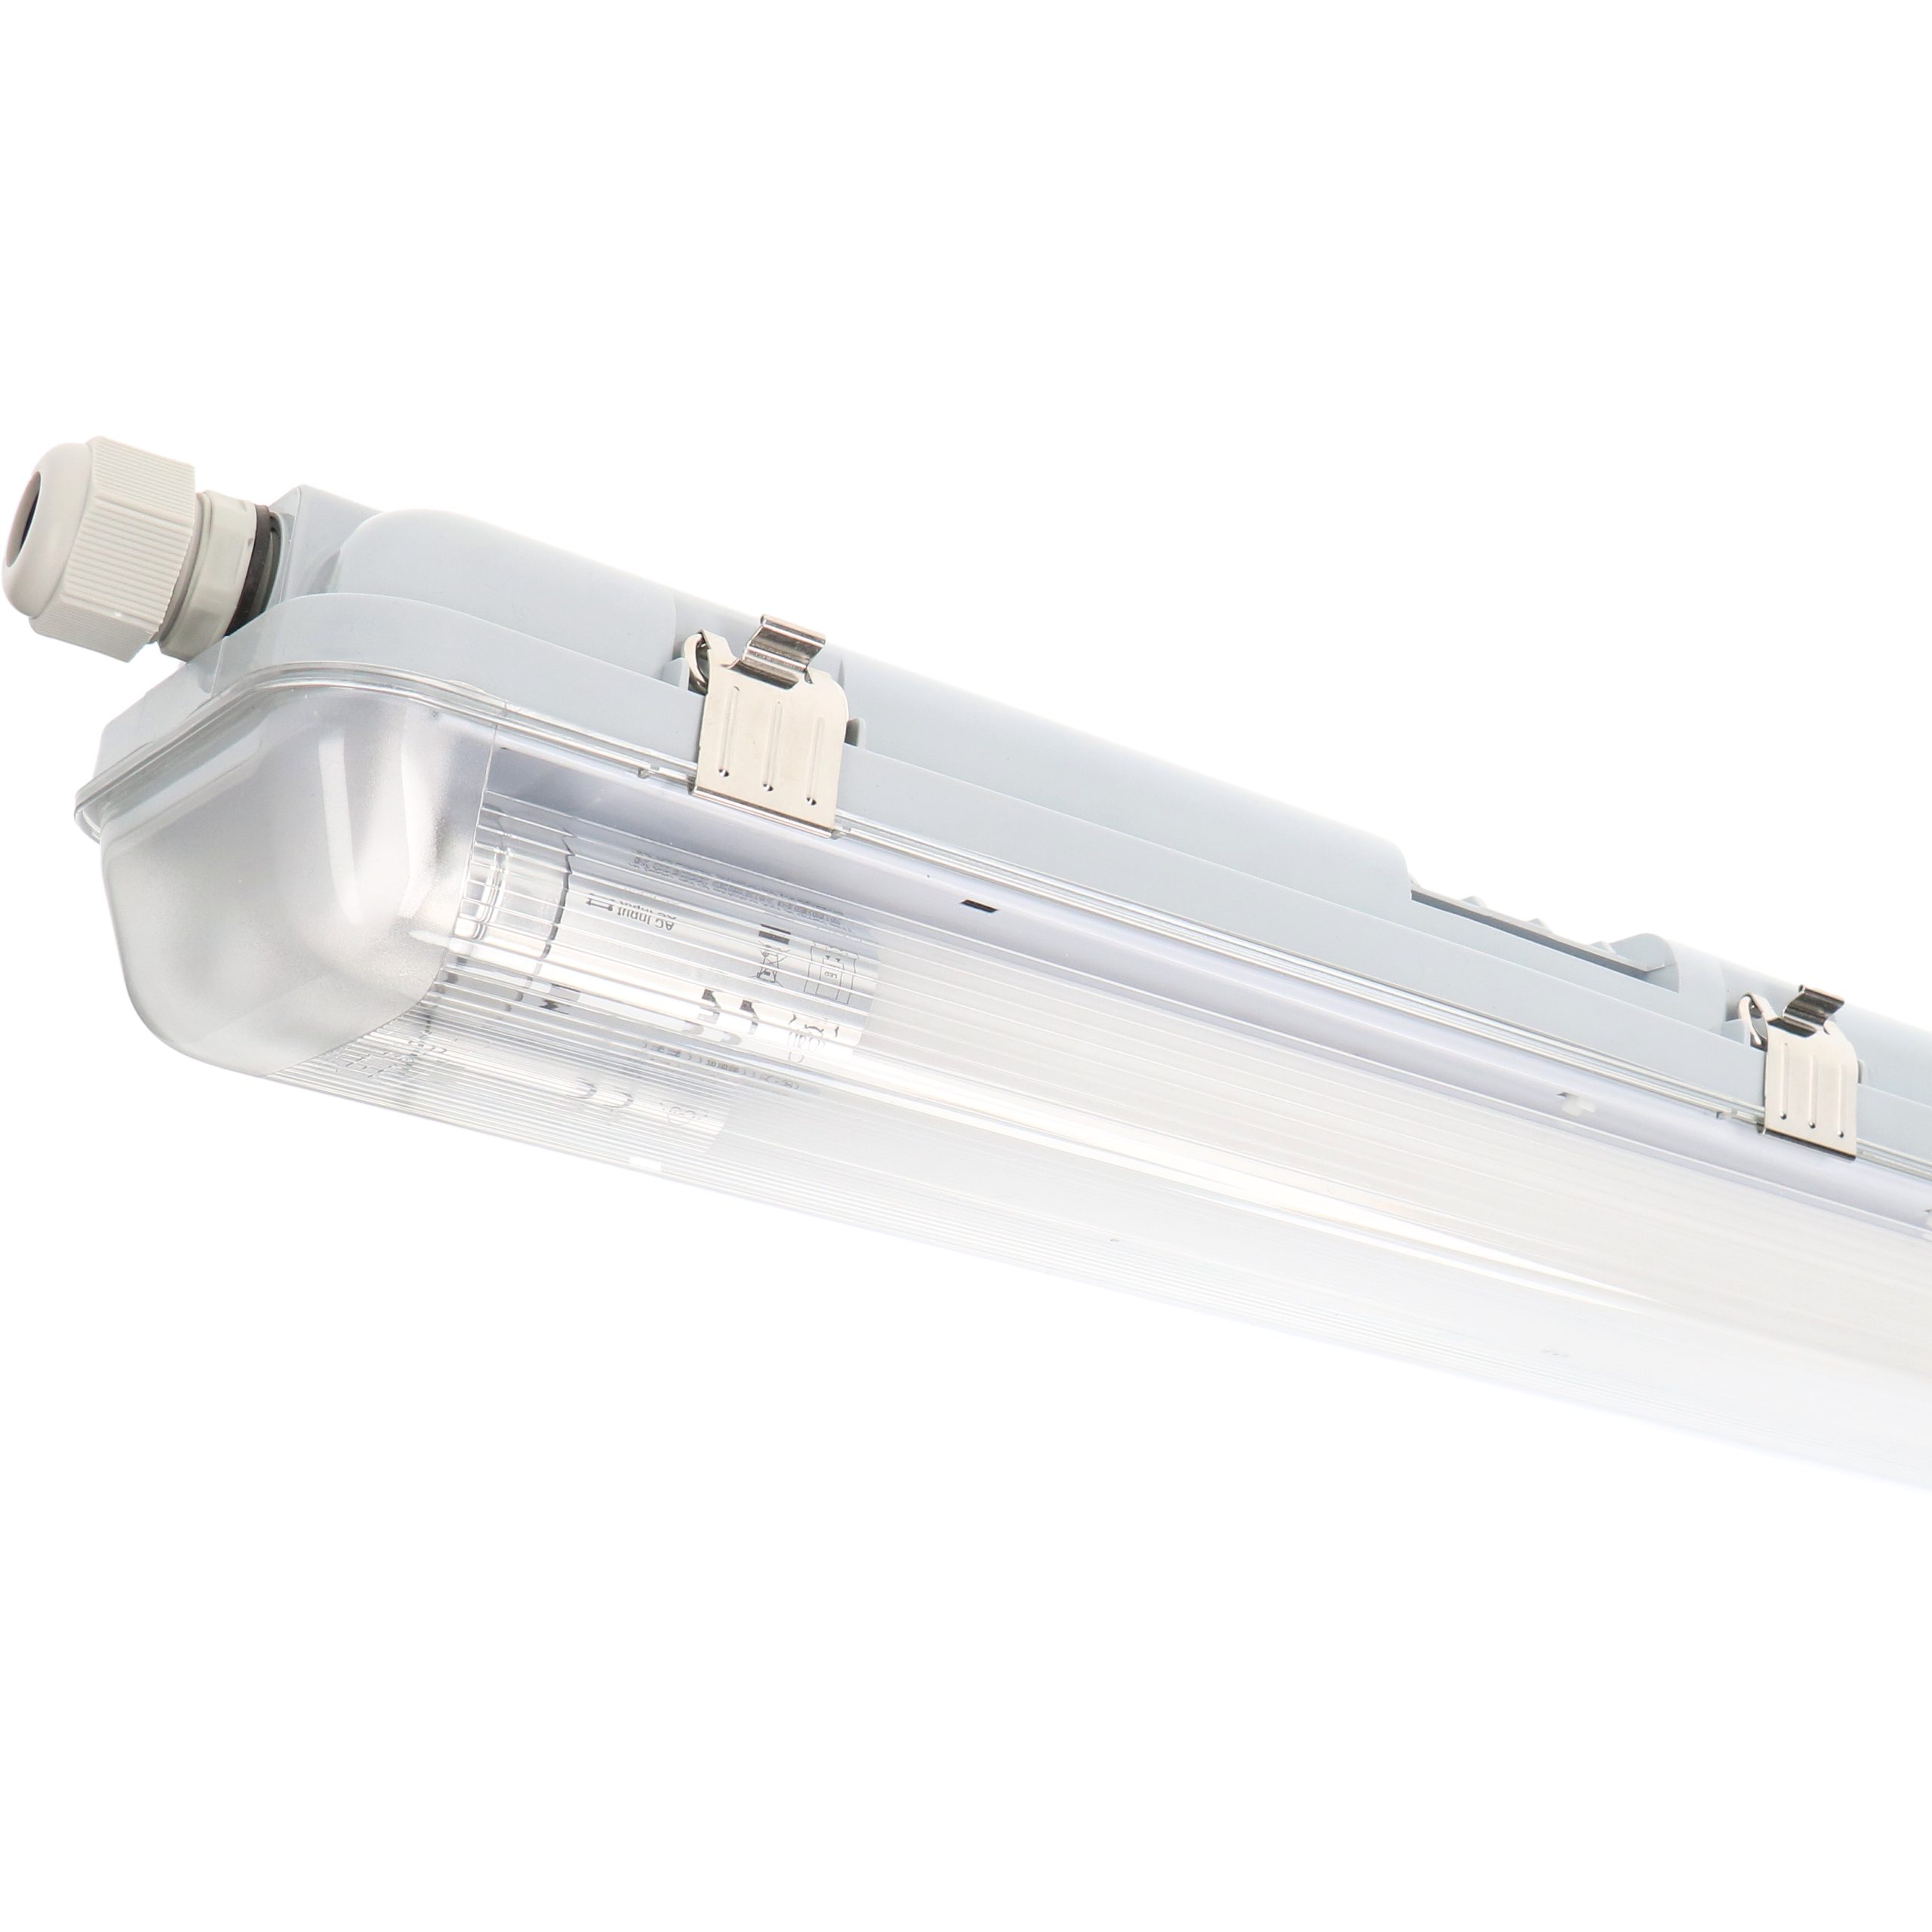 LED's light LED IP65 LED, Deckenleuchte 150 2411205 G13 cm 20,5W 2x mit neutralweiß LED-Röhren Feuchtraumleuchte